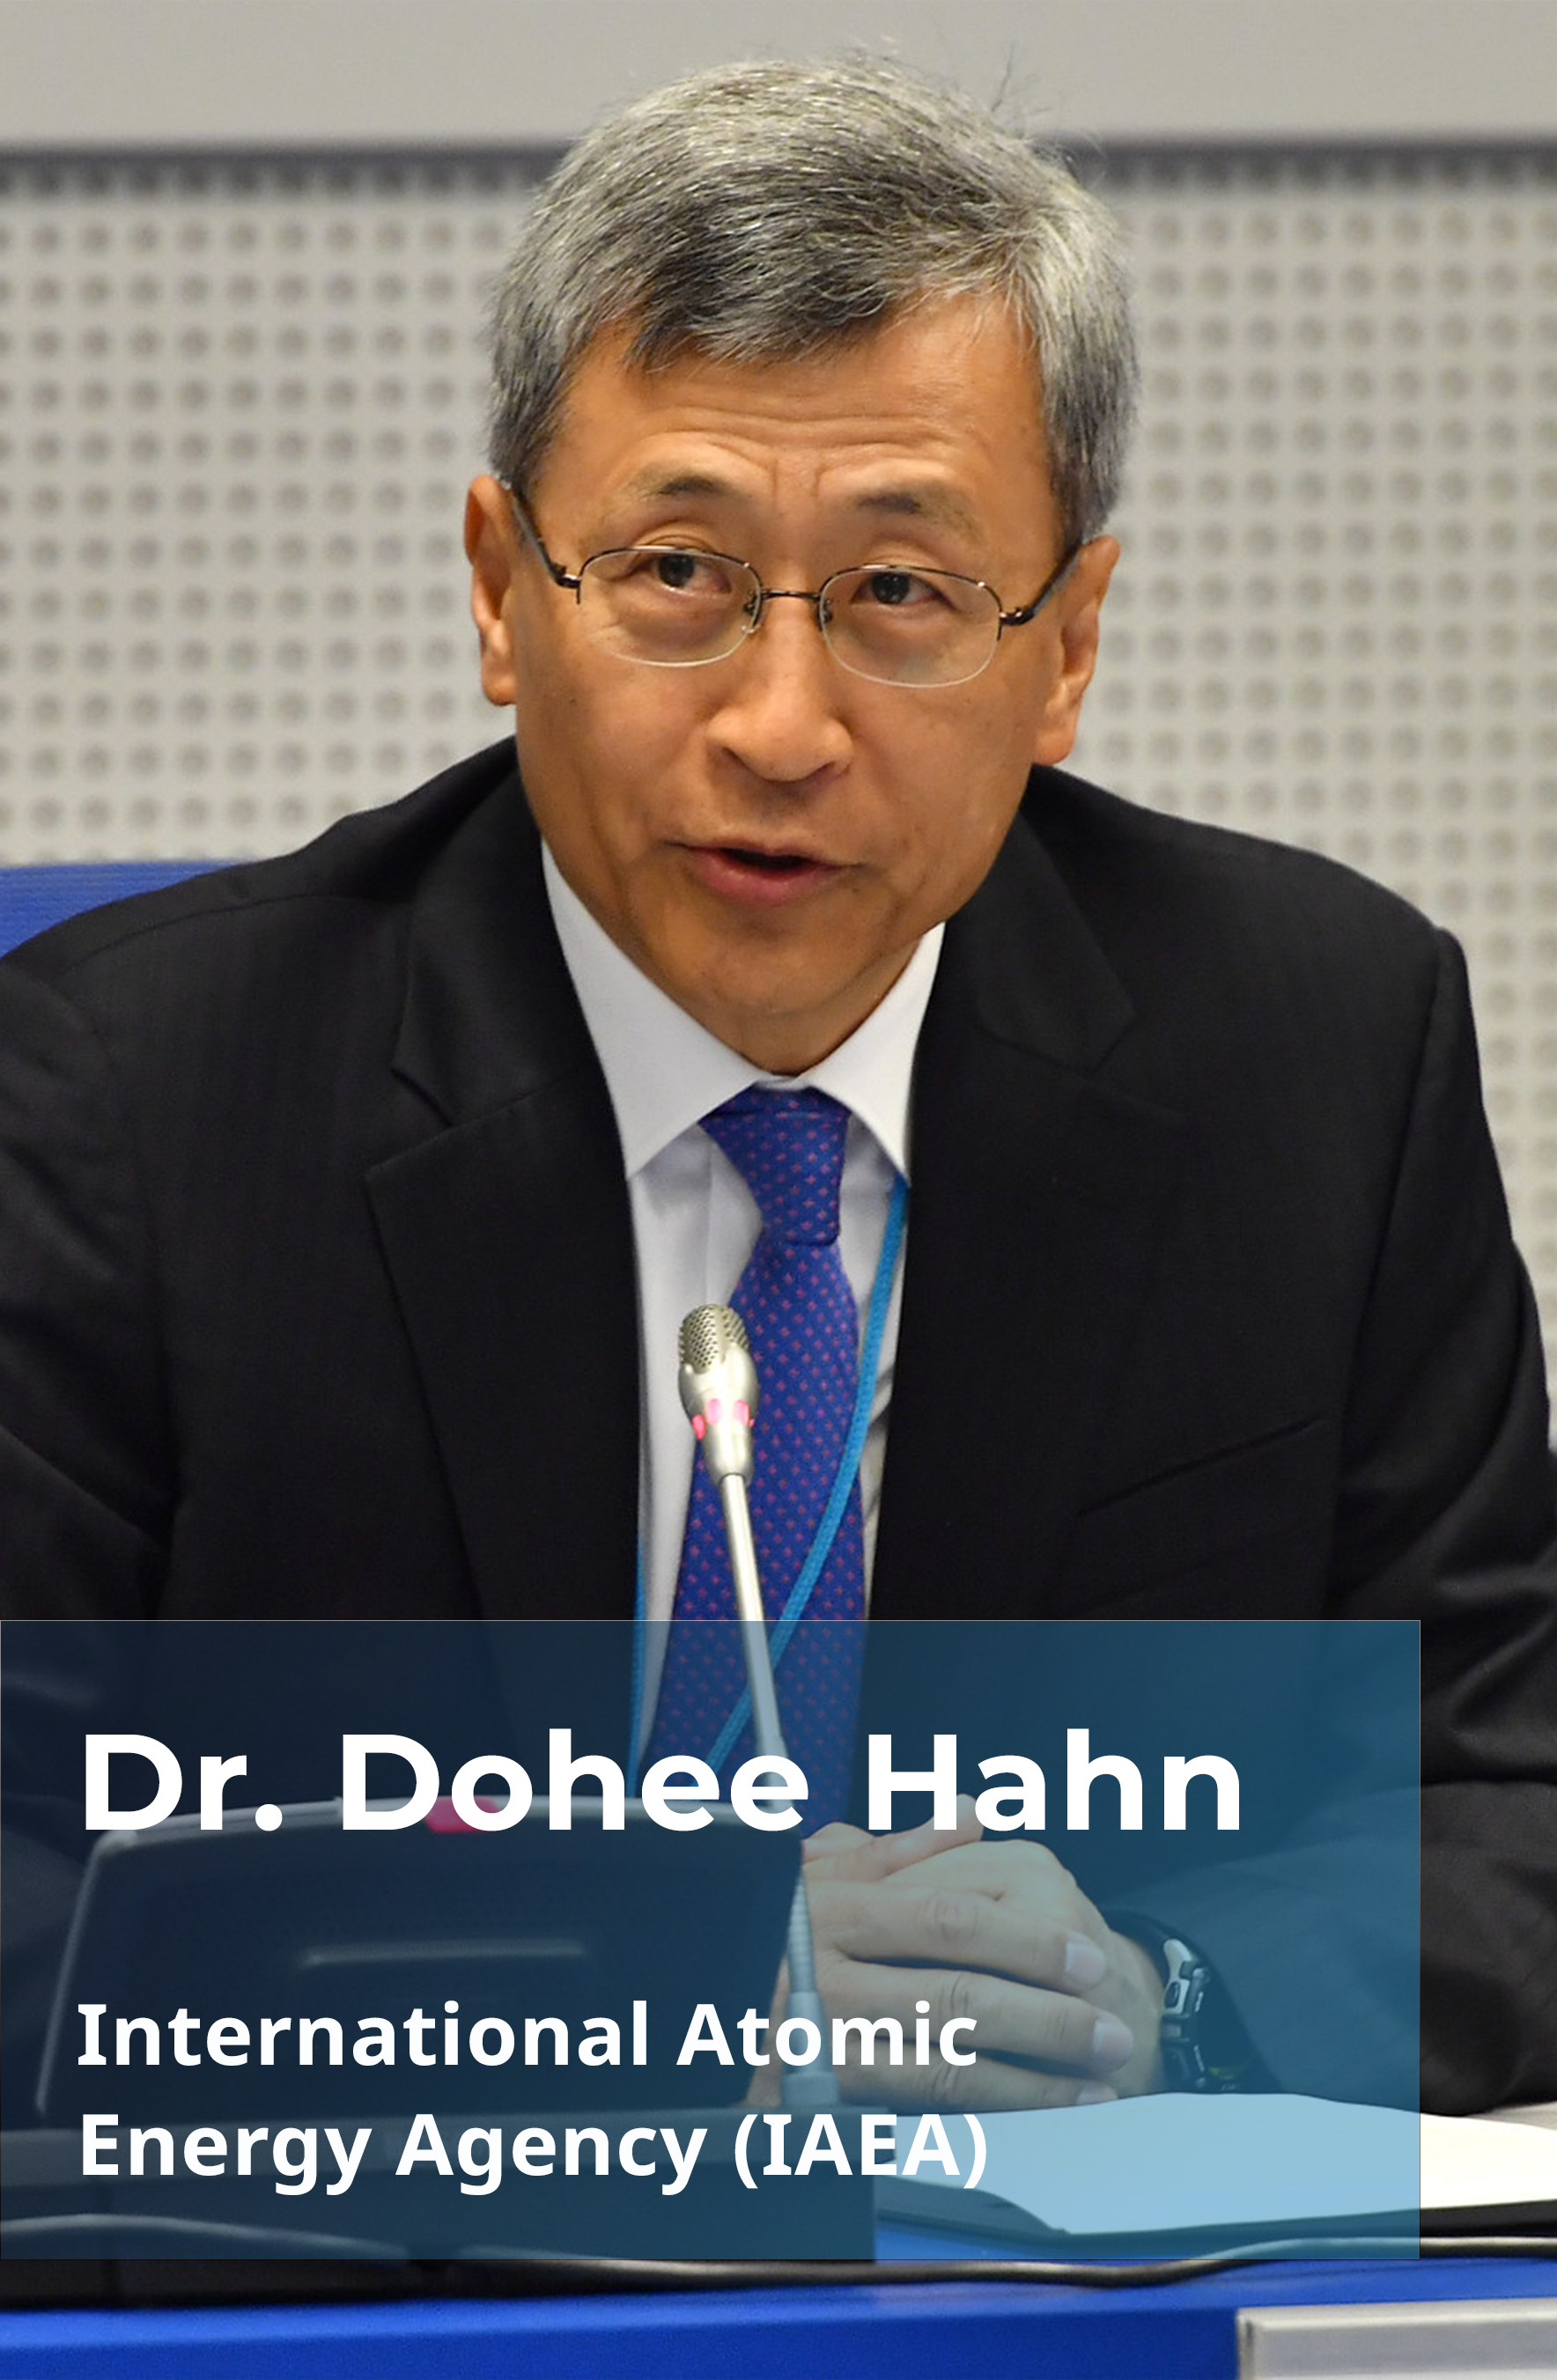 Dr. Dohee Hahn